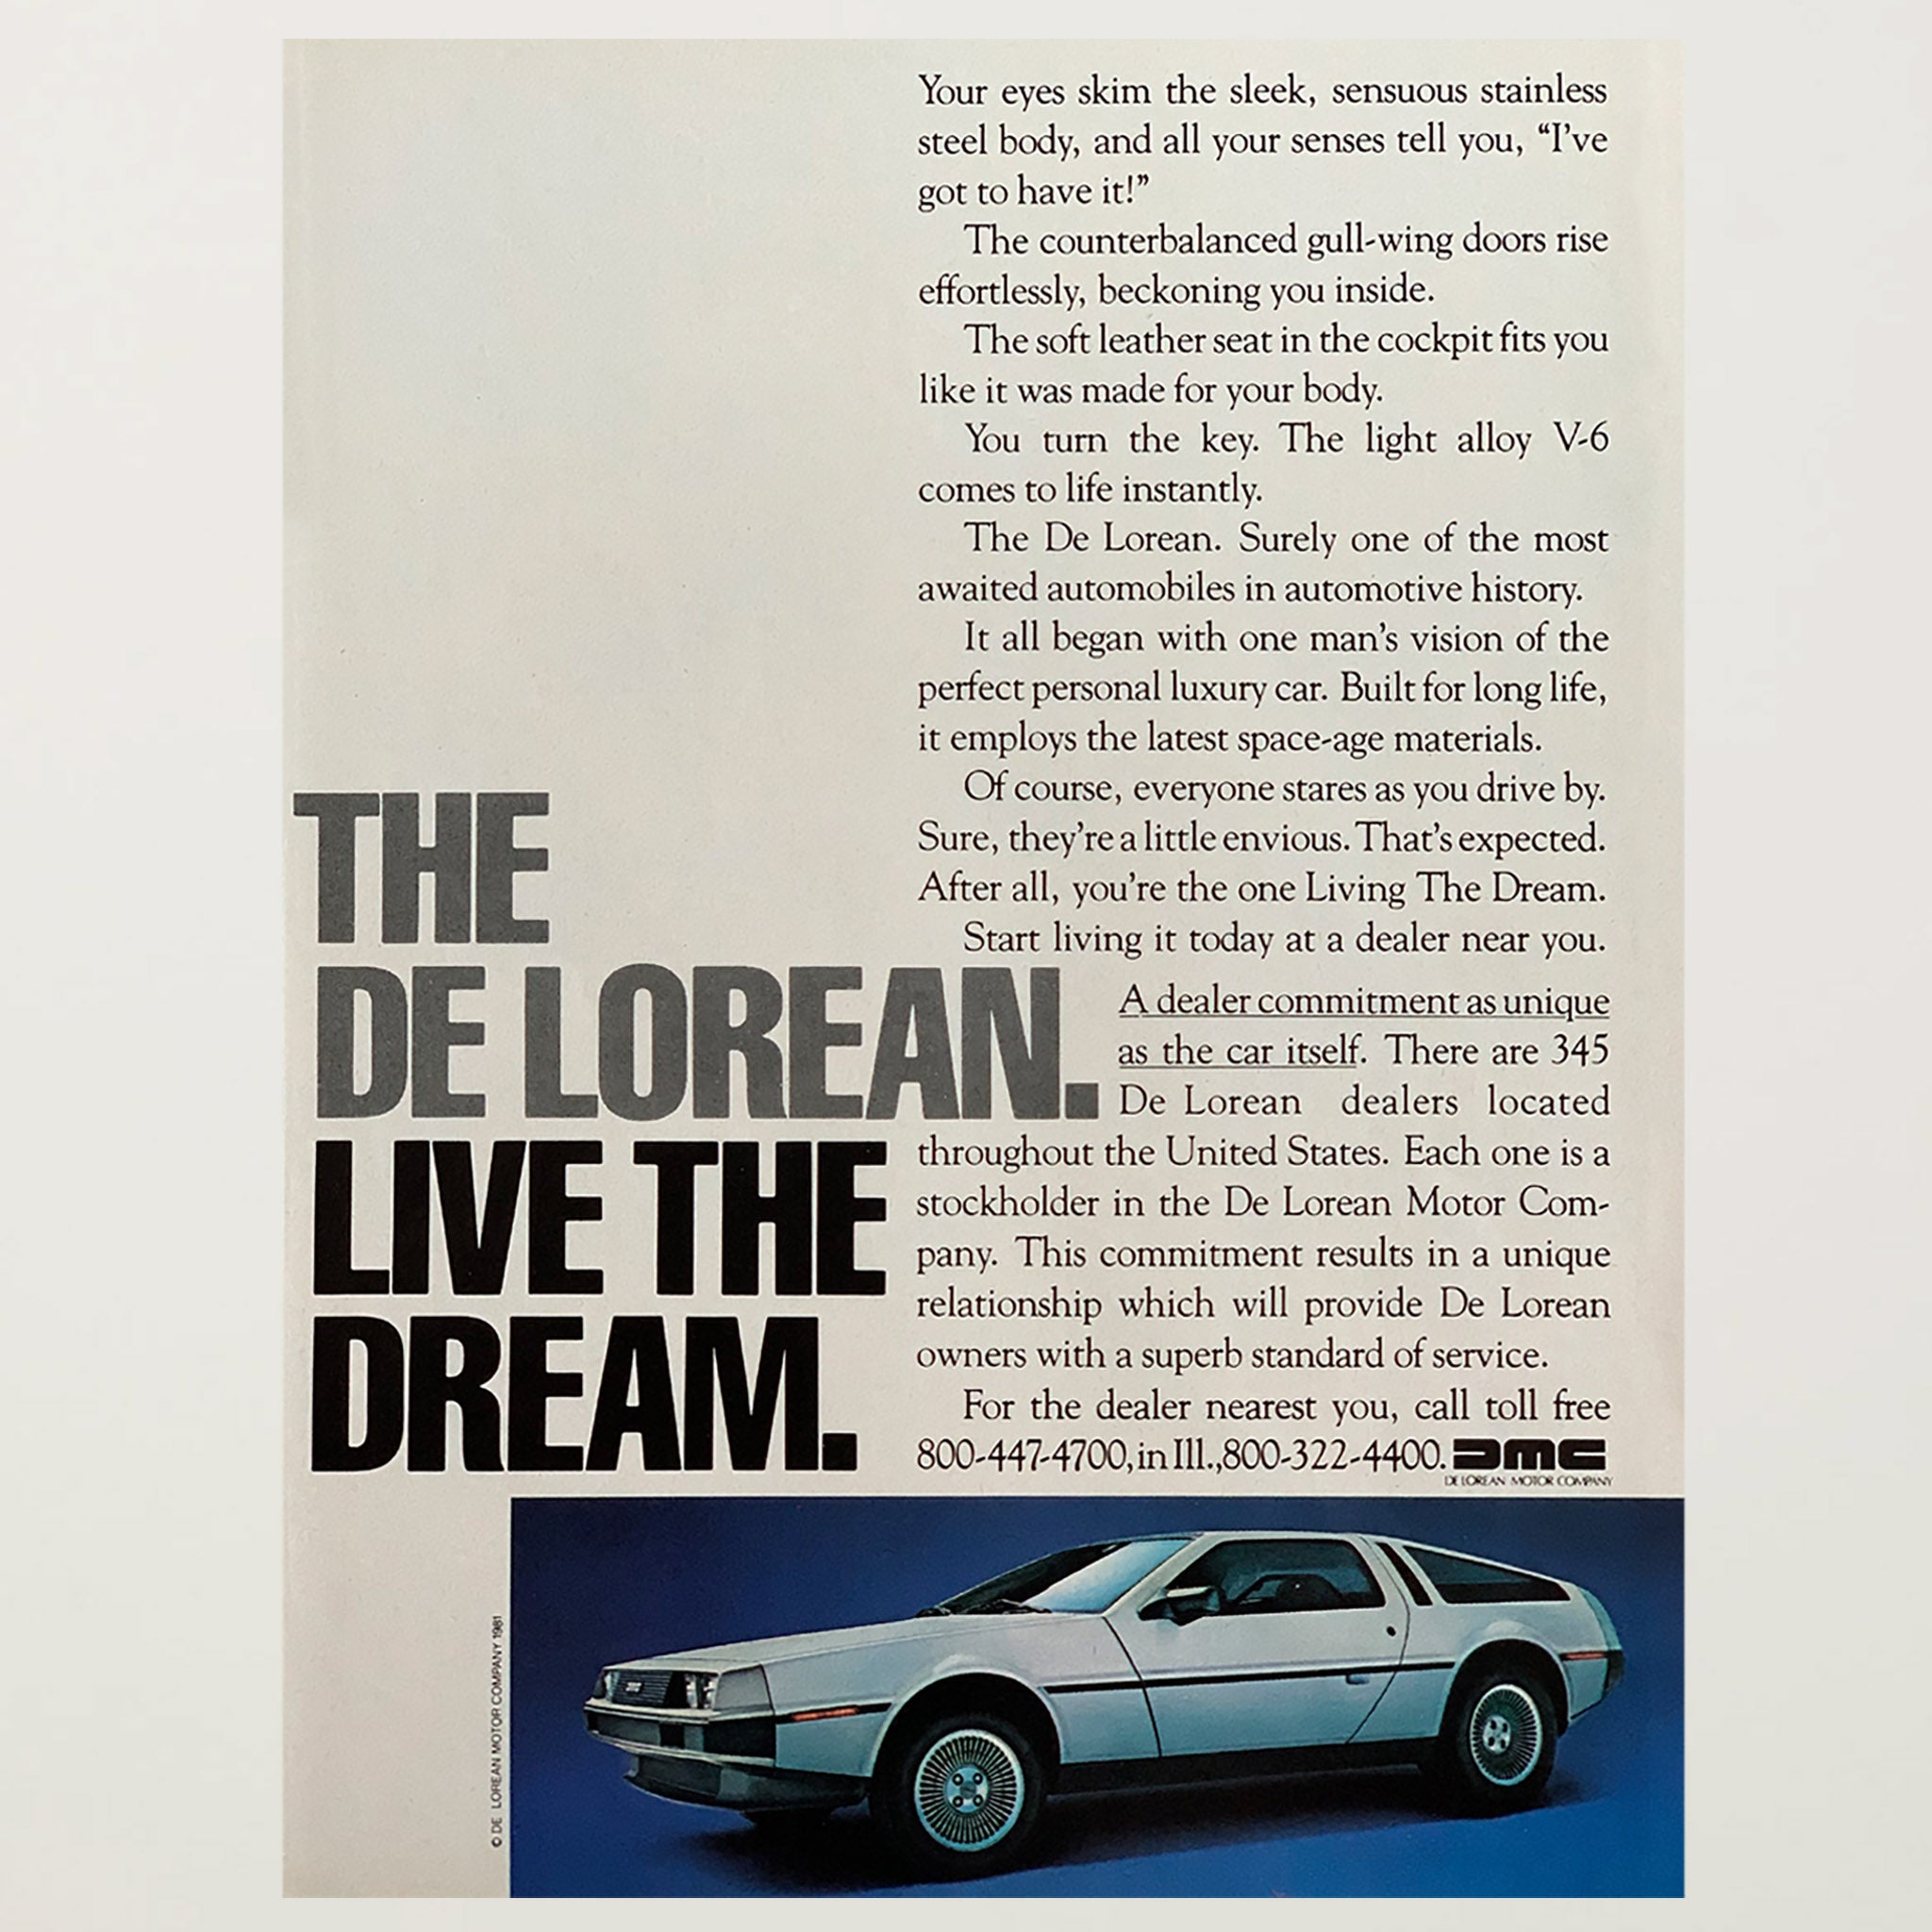 Framed DeLorean Motor Company Live the Dream Ad